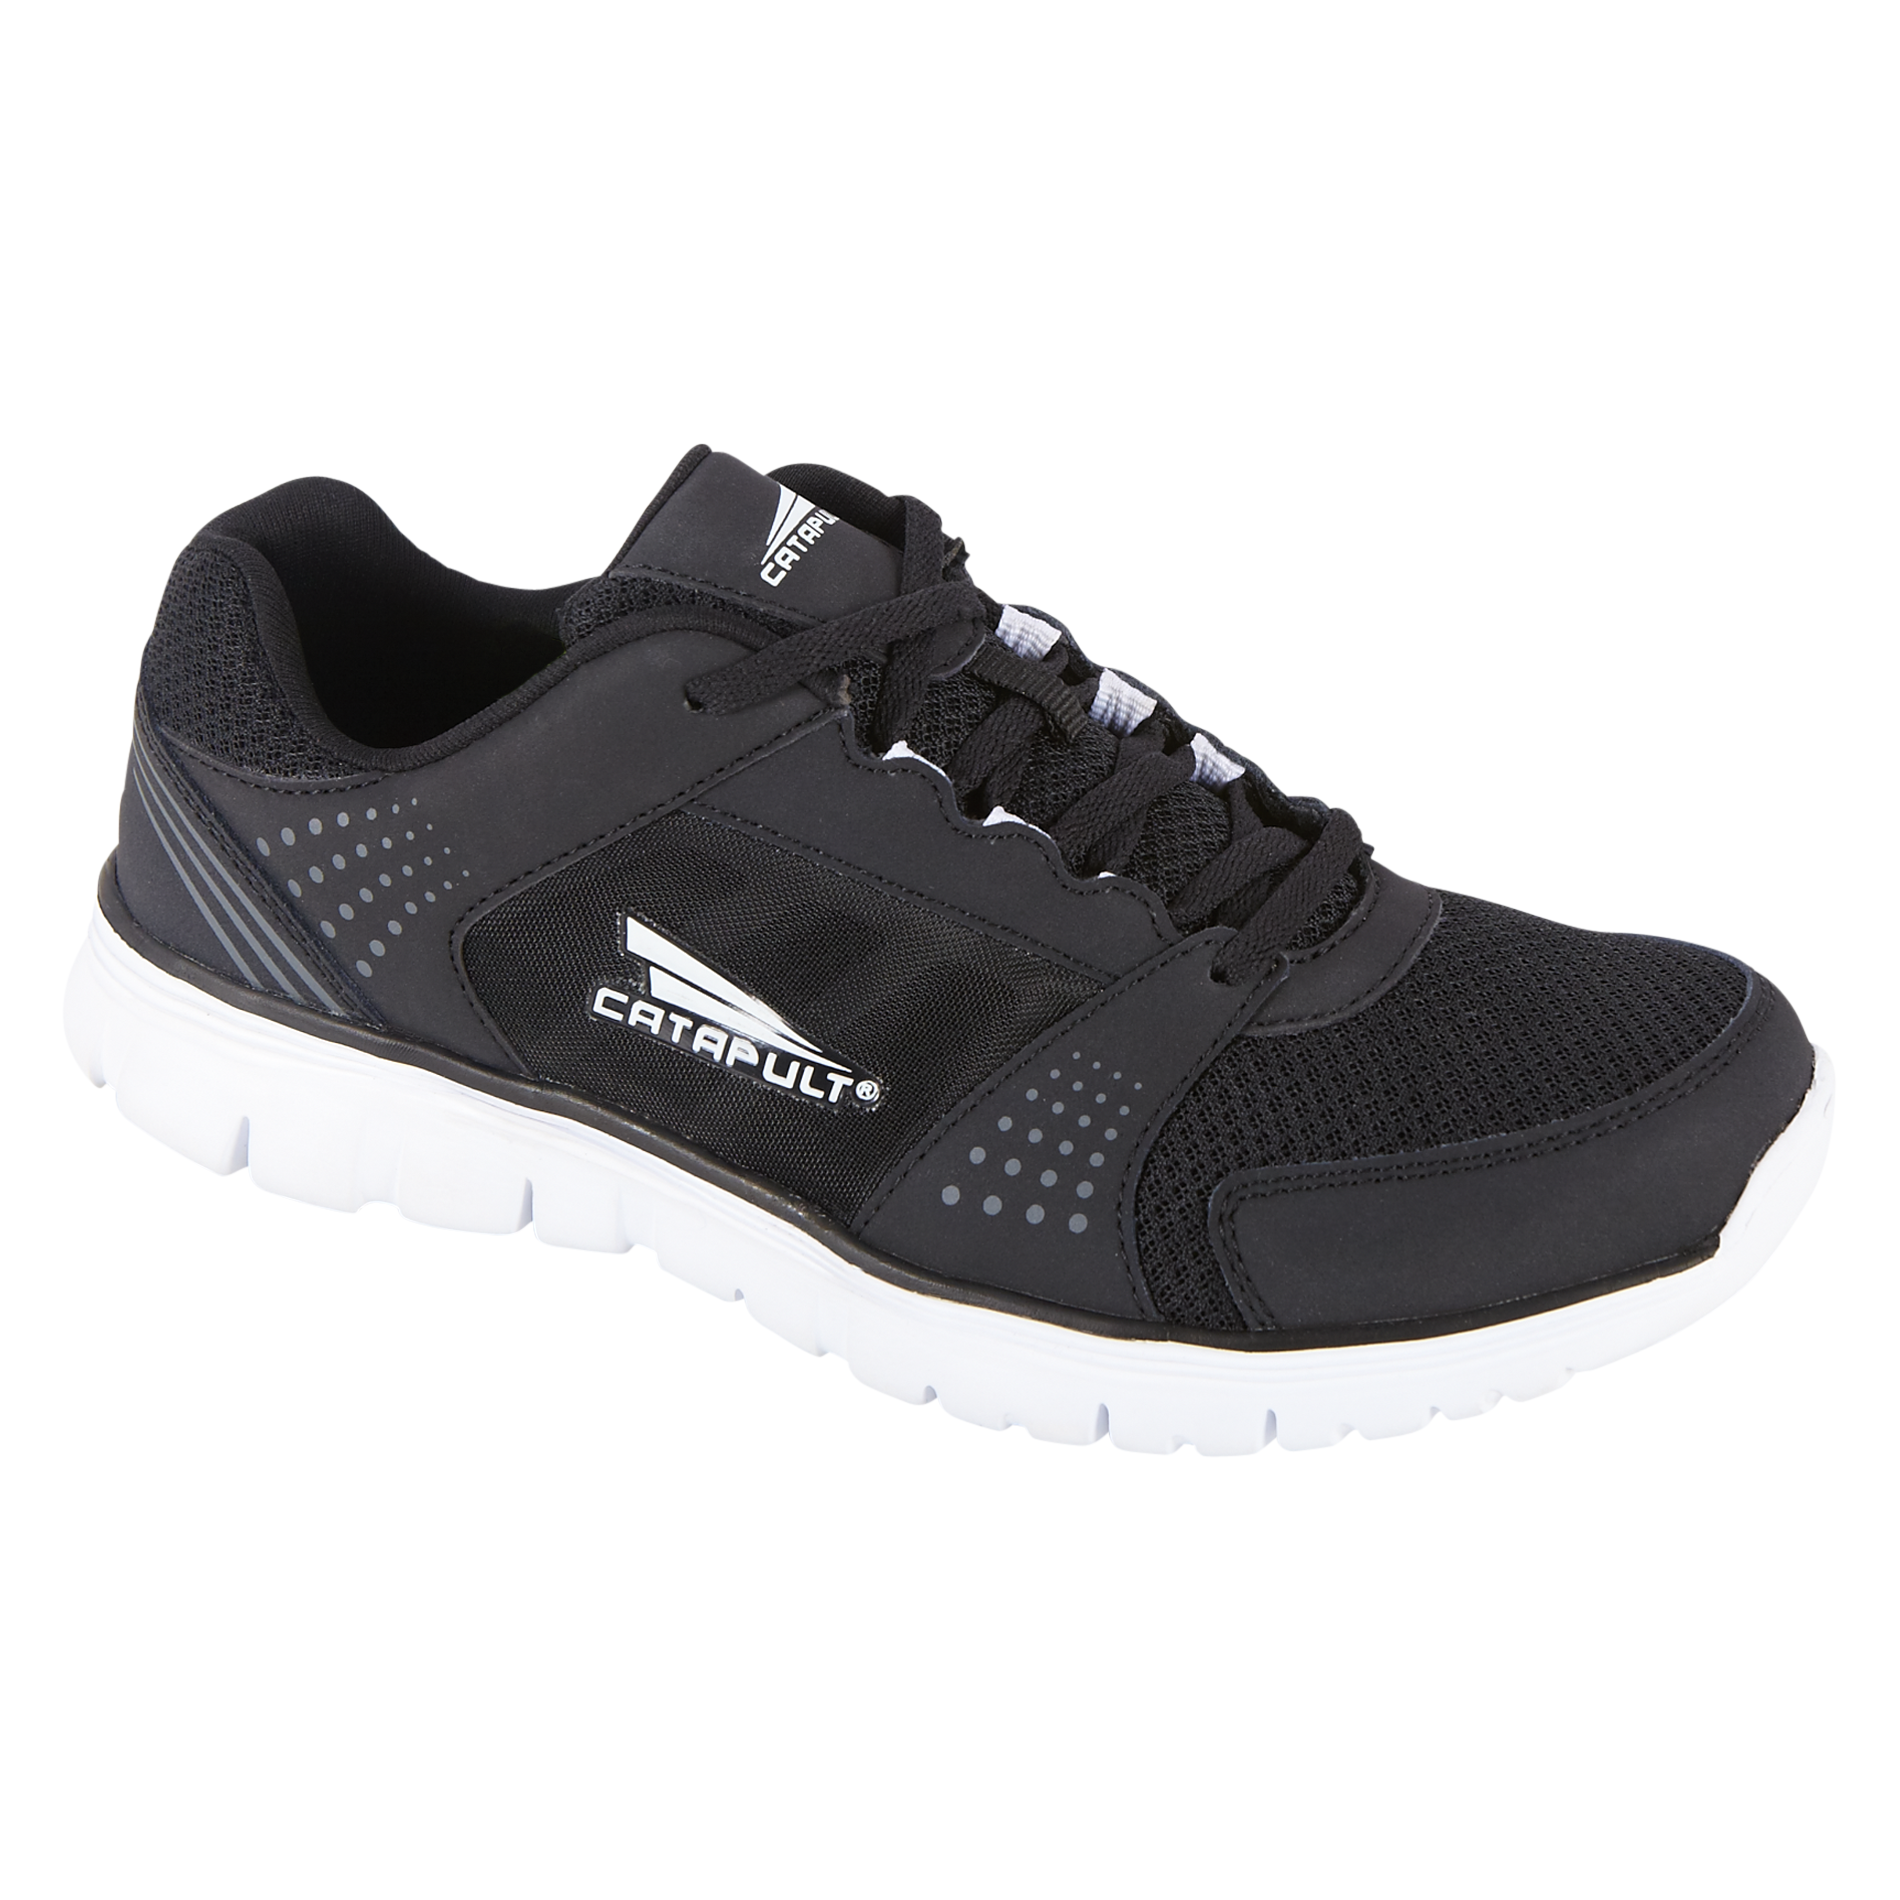 CATAPULT Men's Athletic Running Shoe Ultralyte - Black